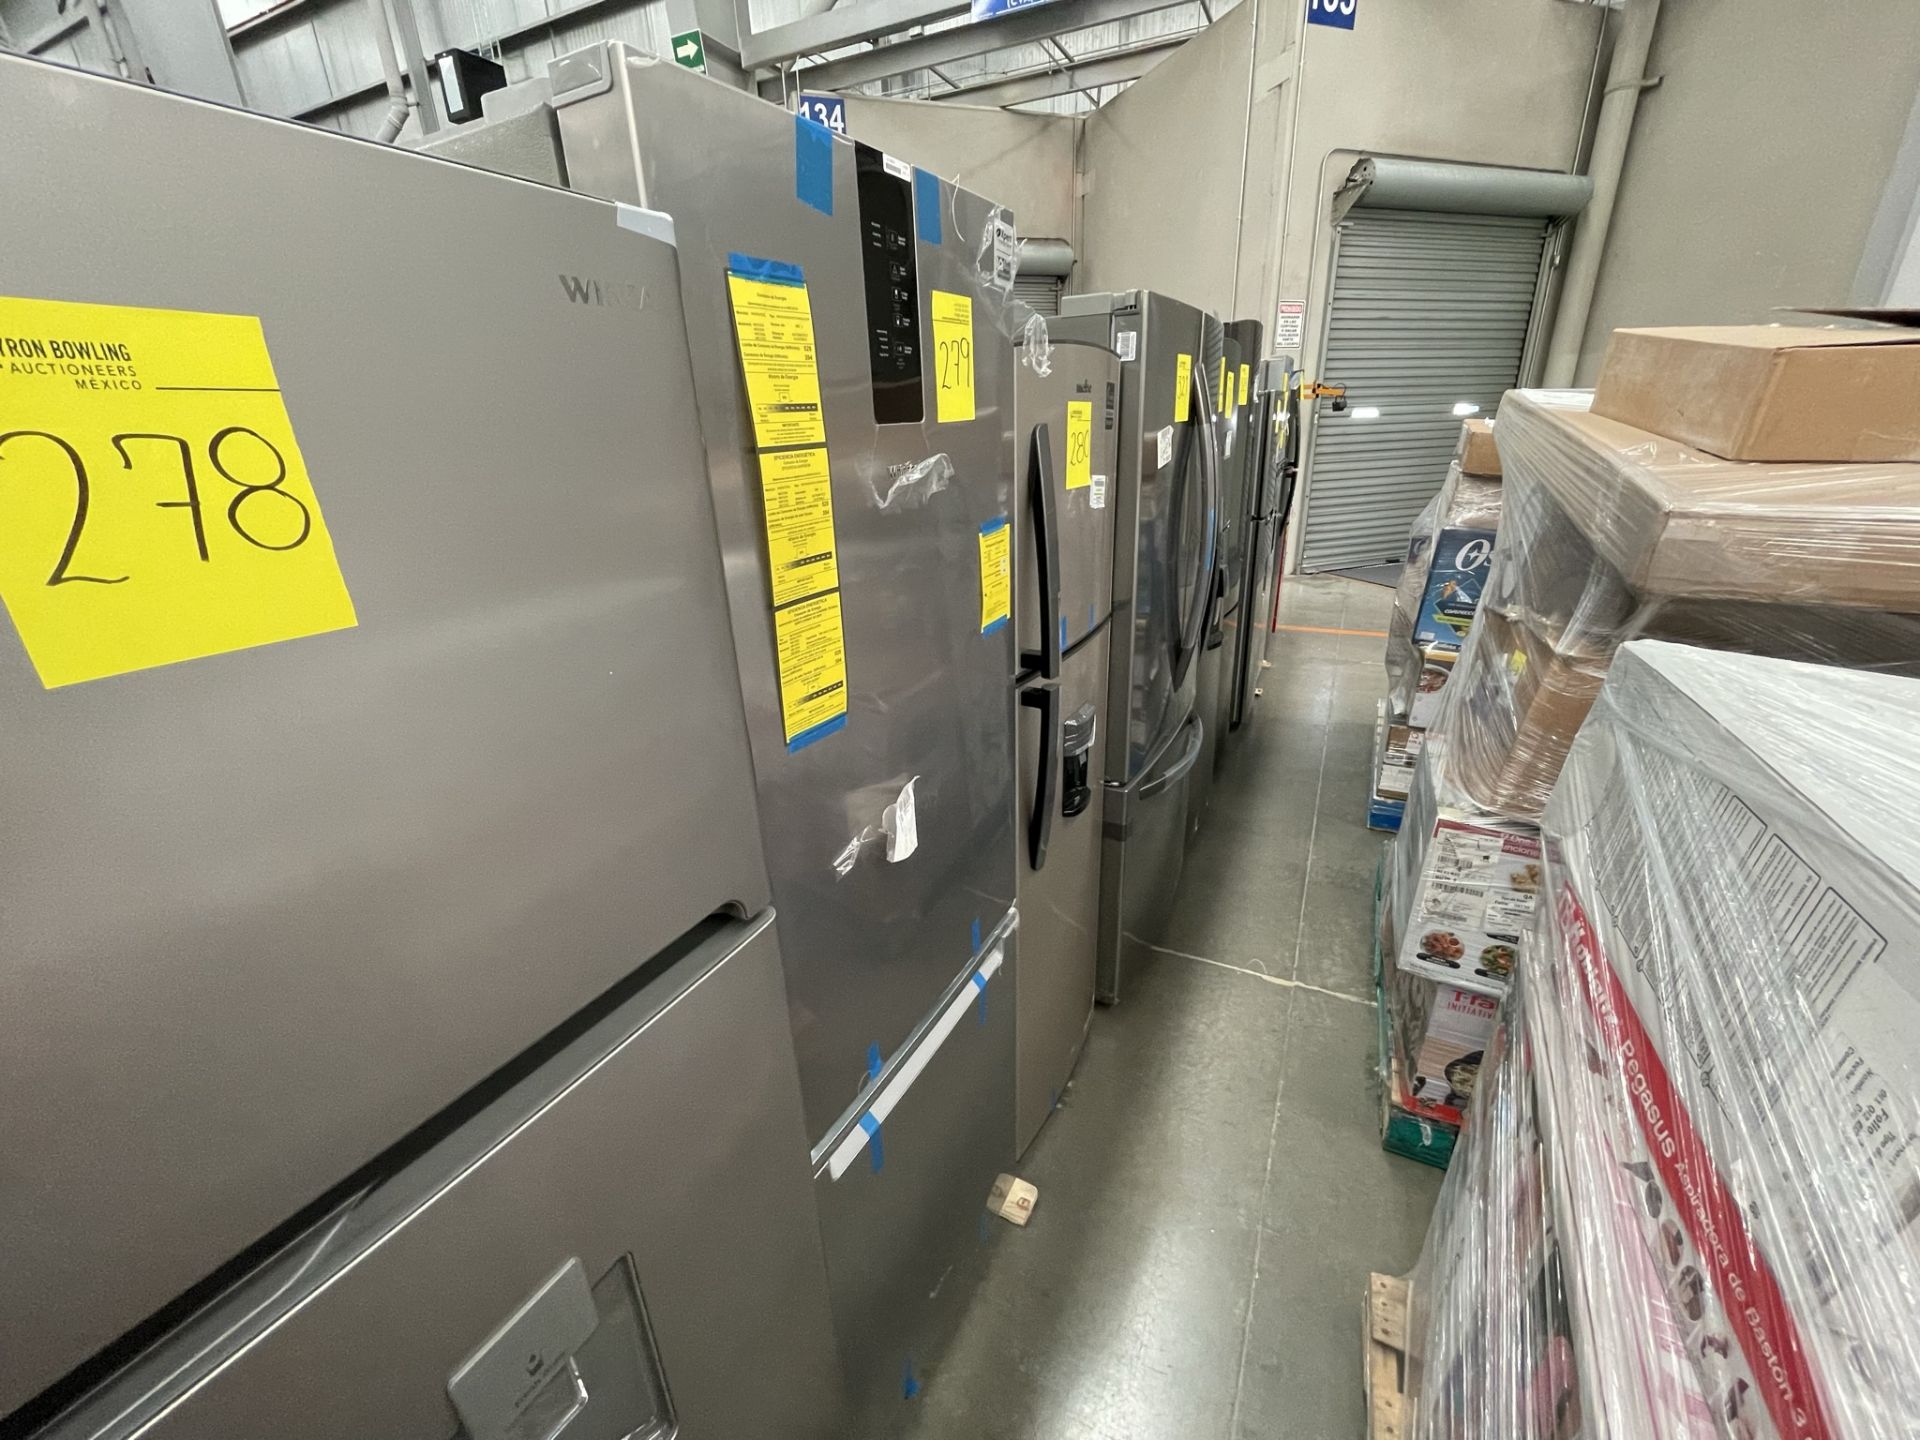 (EQUIPO NUEVO) 1 Refrigerador Marca WHIRPOOL, Modelo WB1332A, Serie WB1332A03, Color GRIS, LB-61189 - Image 2 of 8